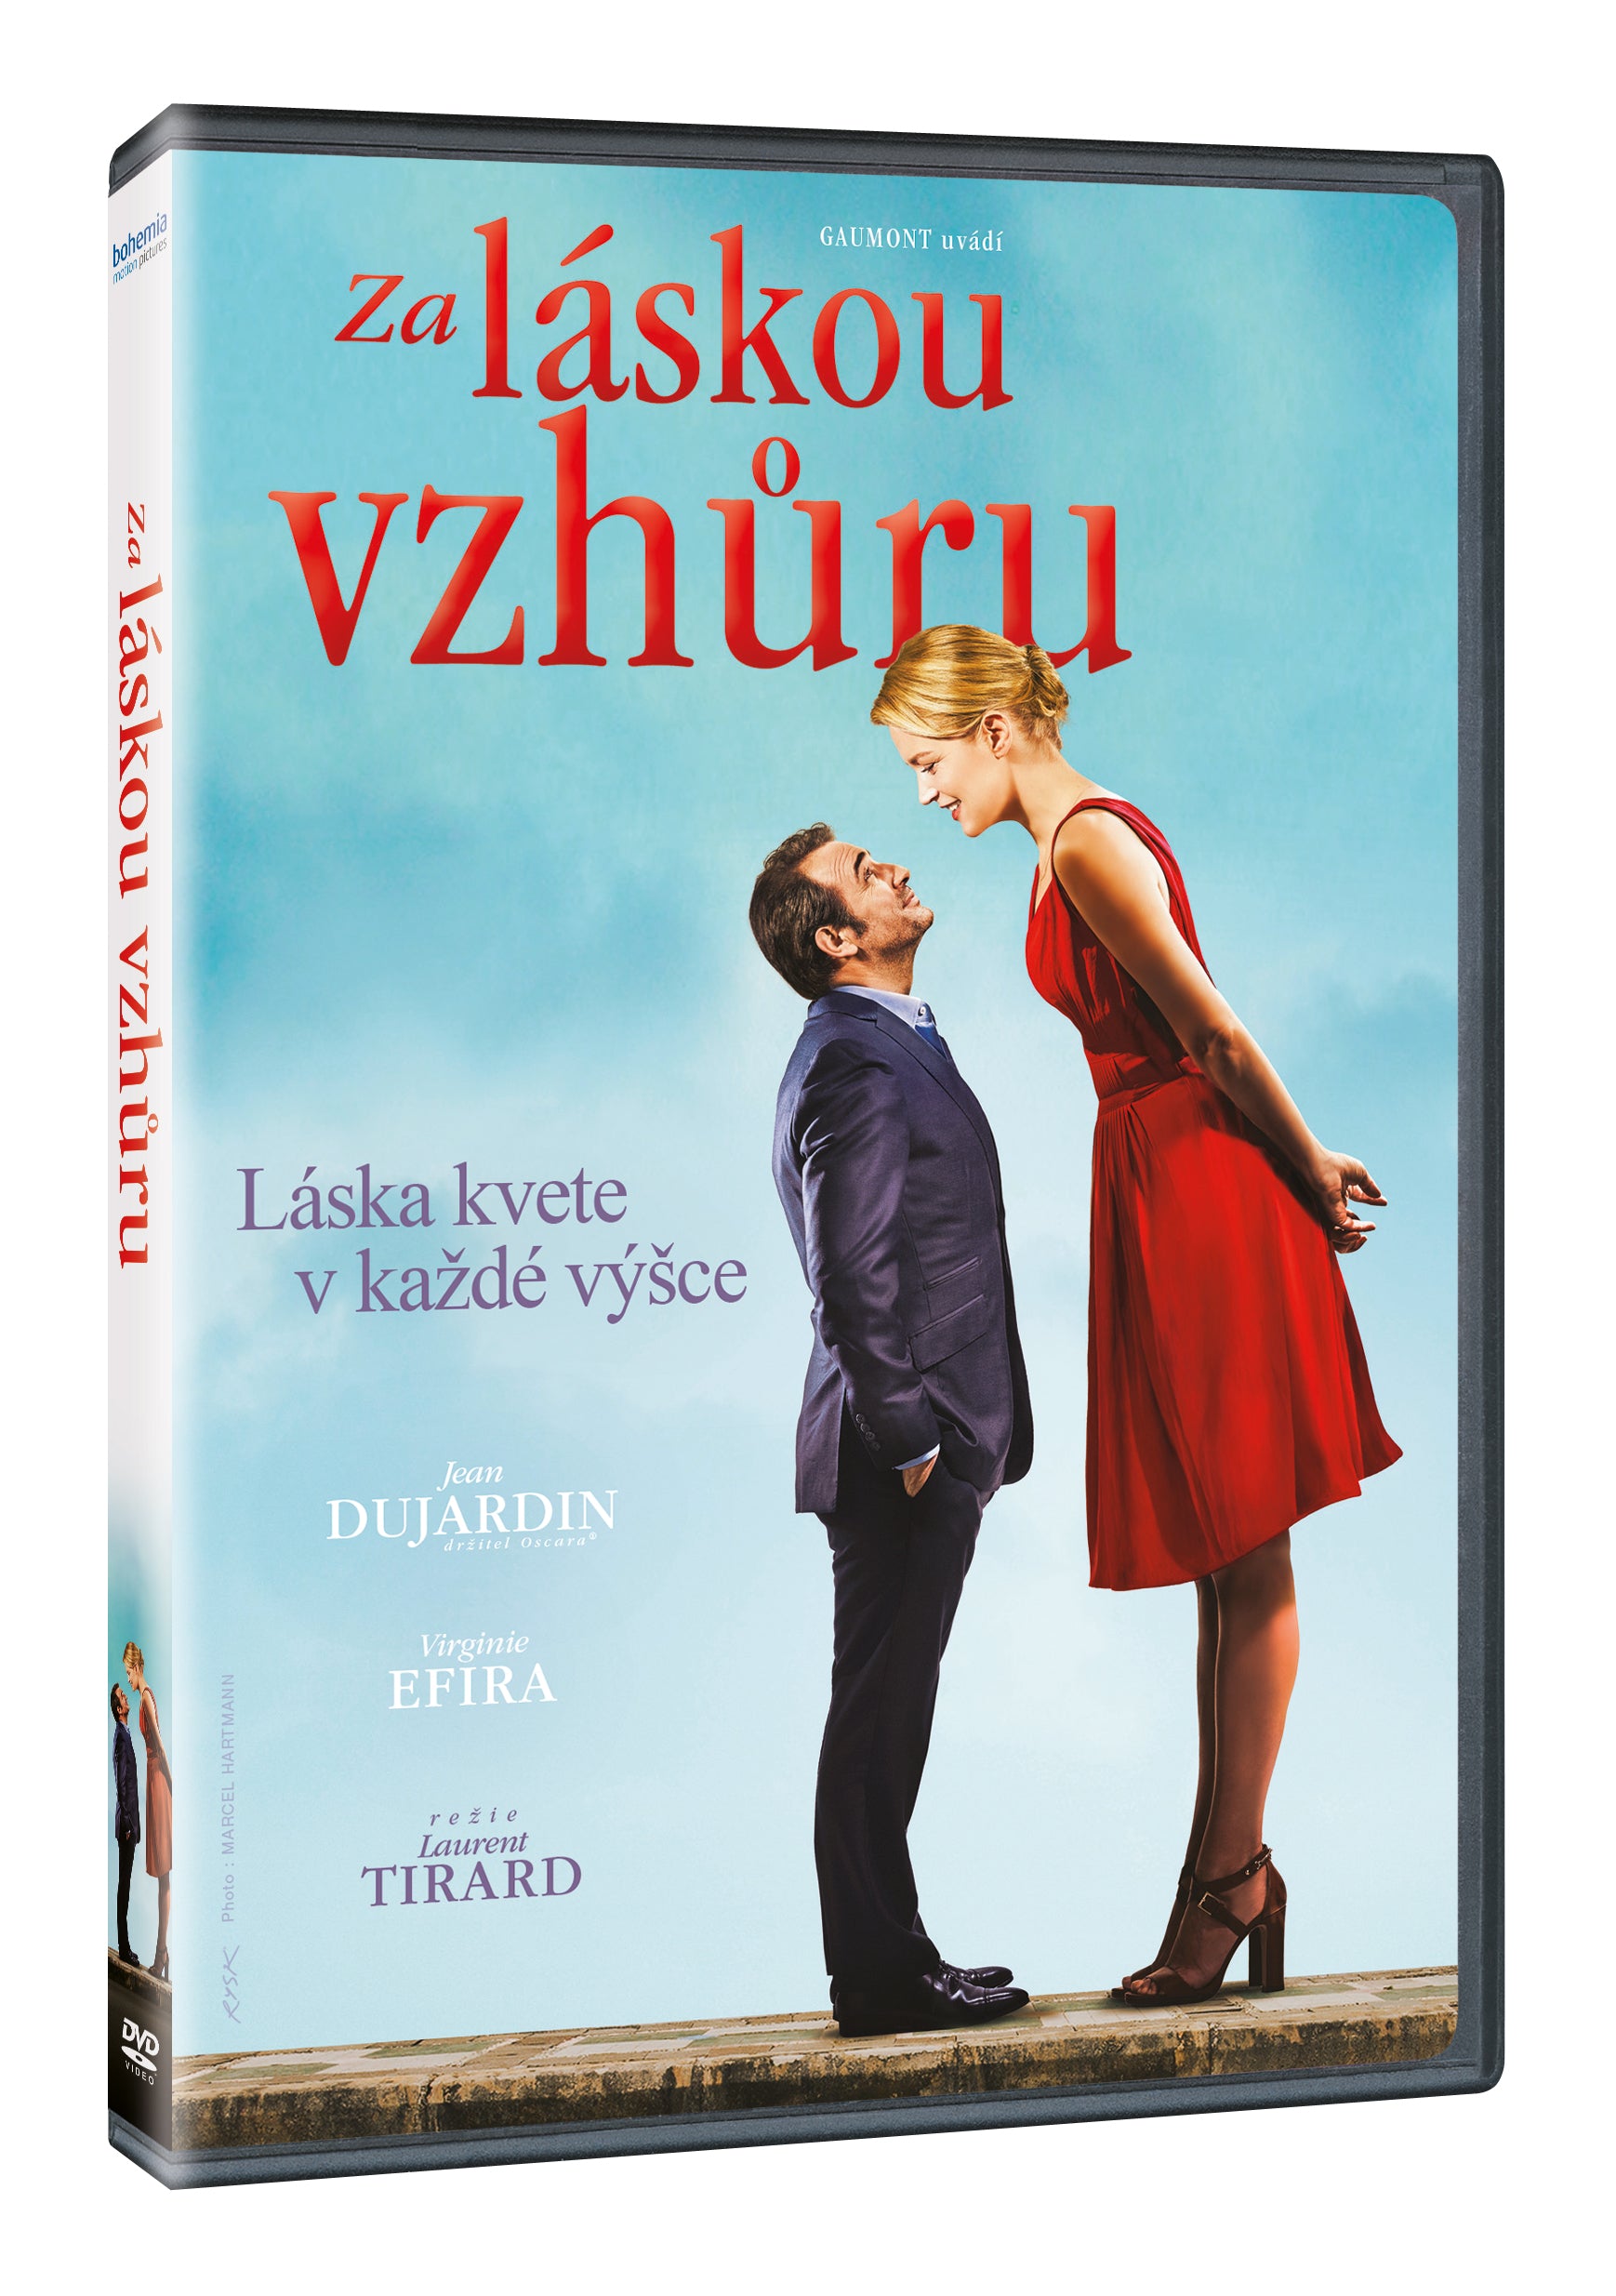 Up for Love / Za laskou vzhuru / Un homme ŕ la hauteur